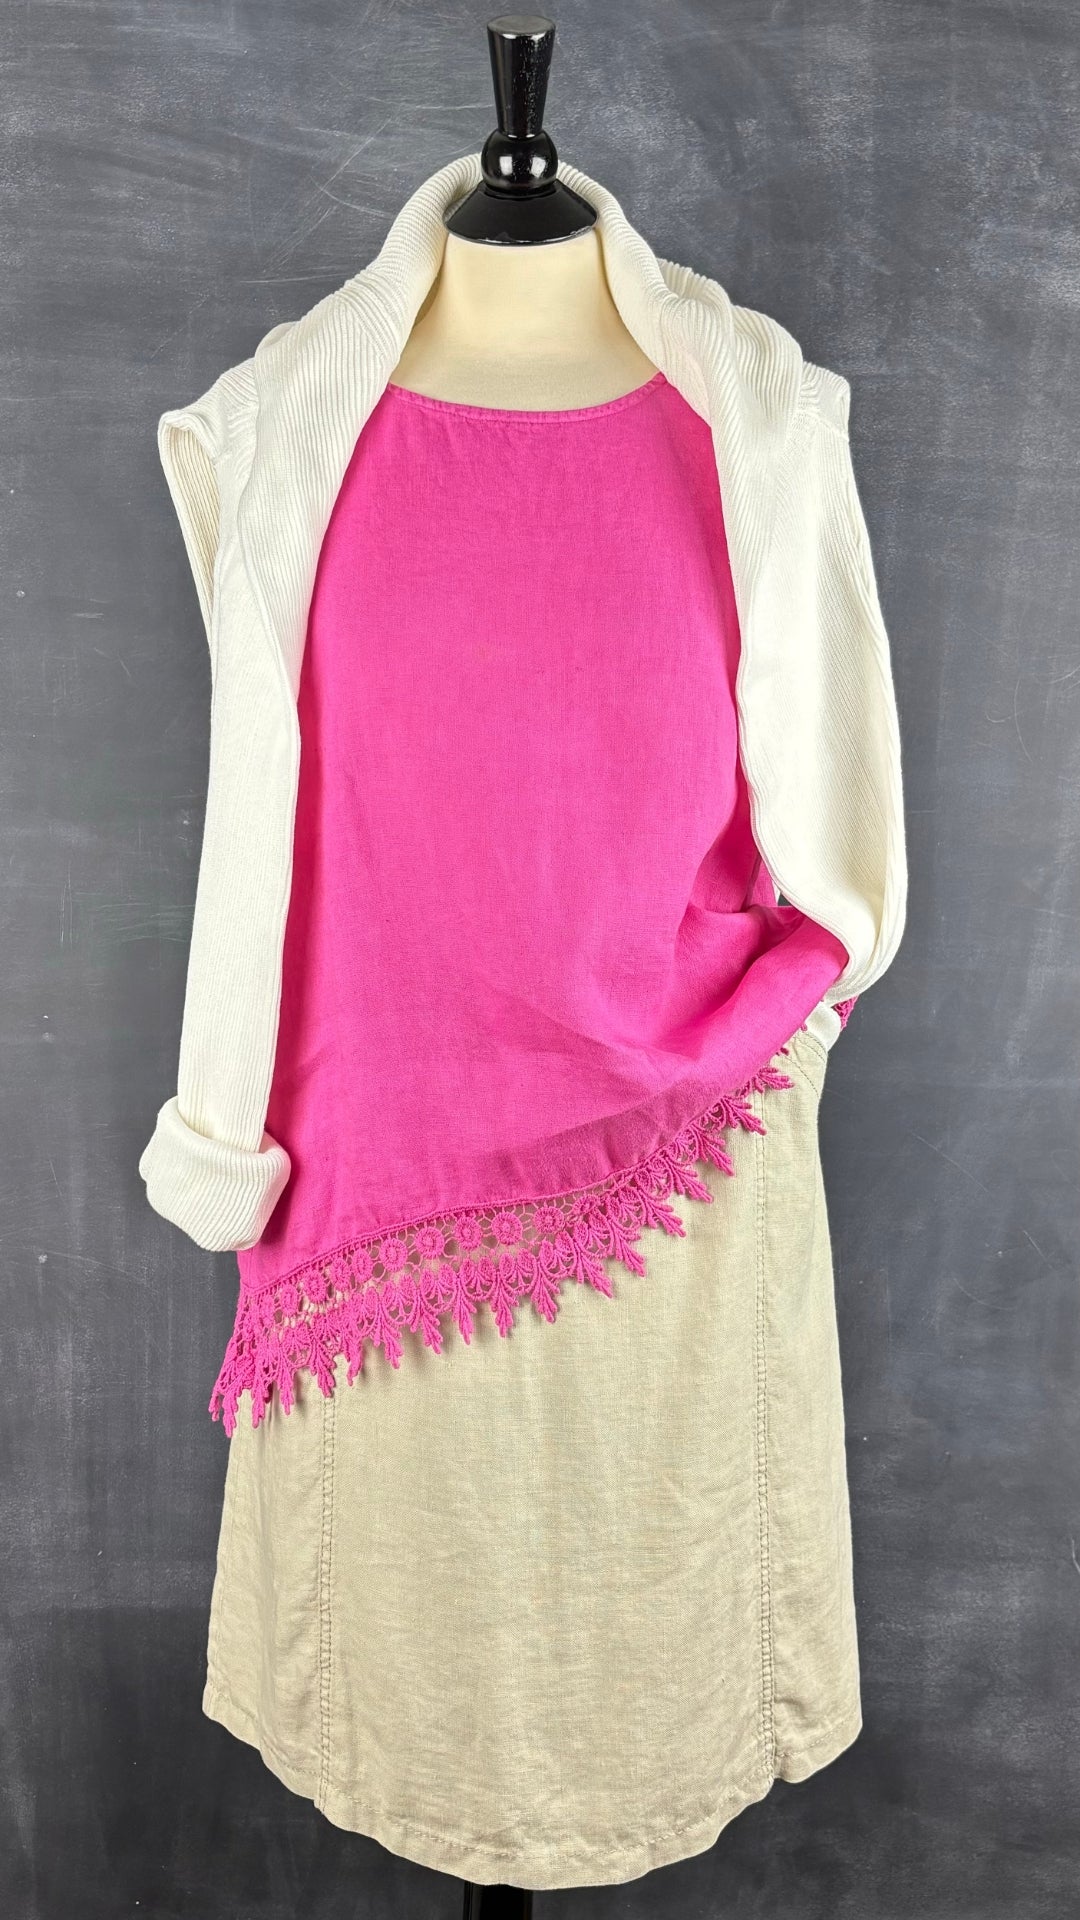 Camisole en lin rose avec ourlet en dentelle Terzo Millennio, taille large. Vue de l'agencement avec la jupe en lin Gardeur et le tricot crème Matinique.